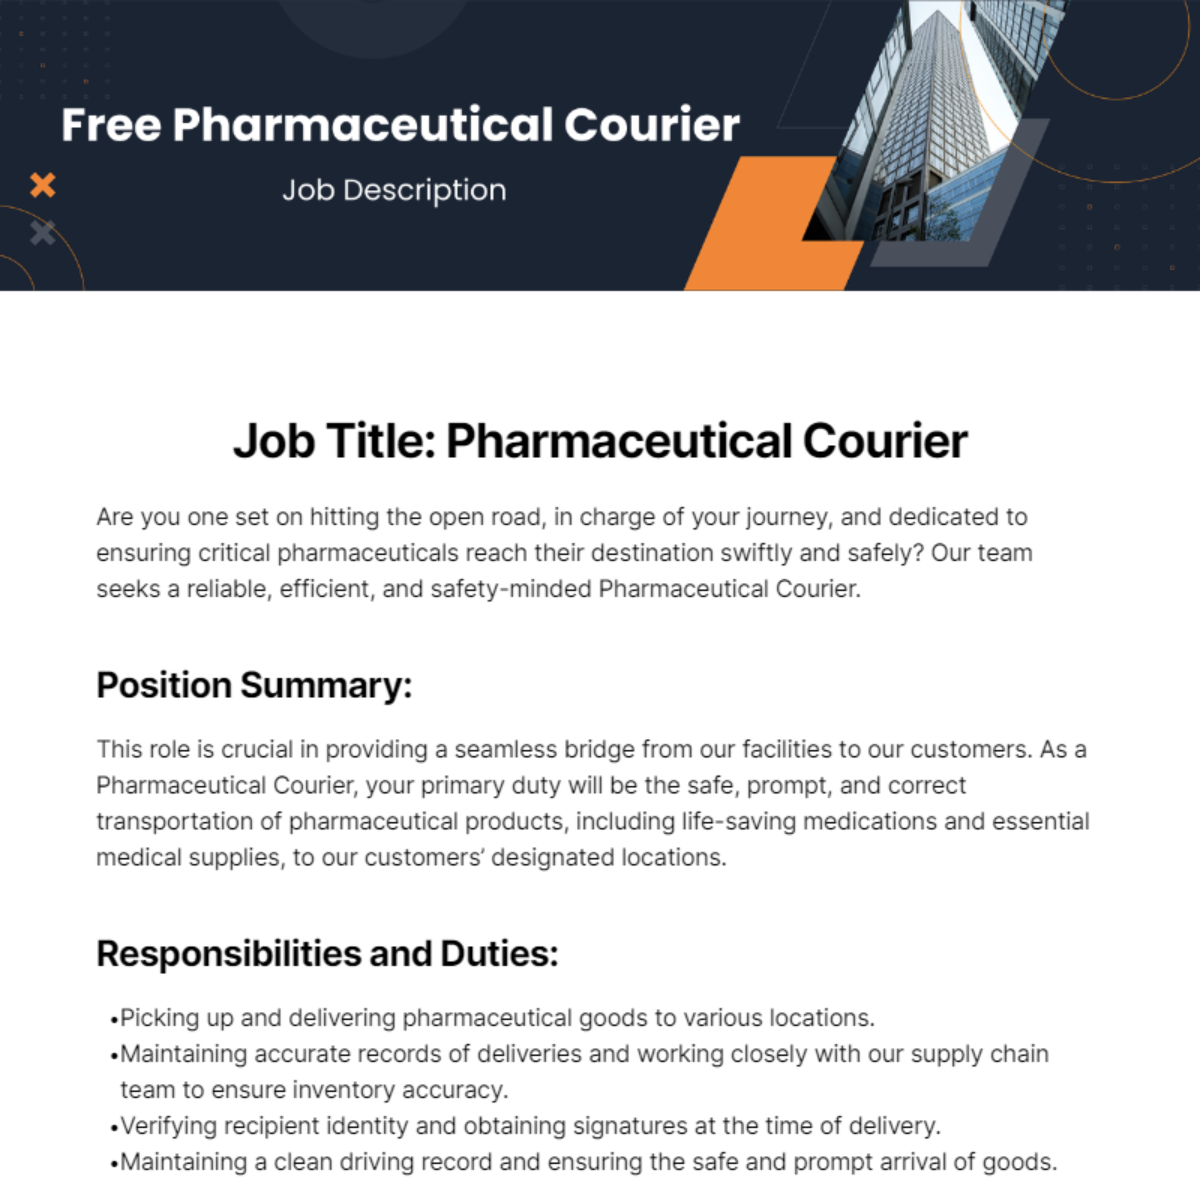 Free Pharmaceutical Courier Job Description Template